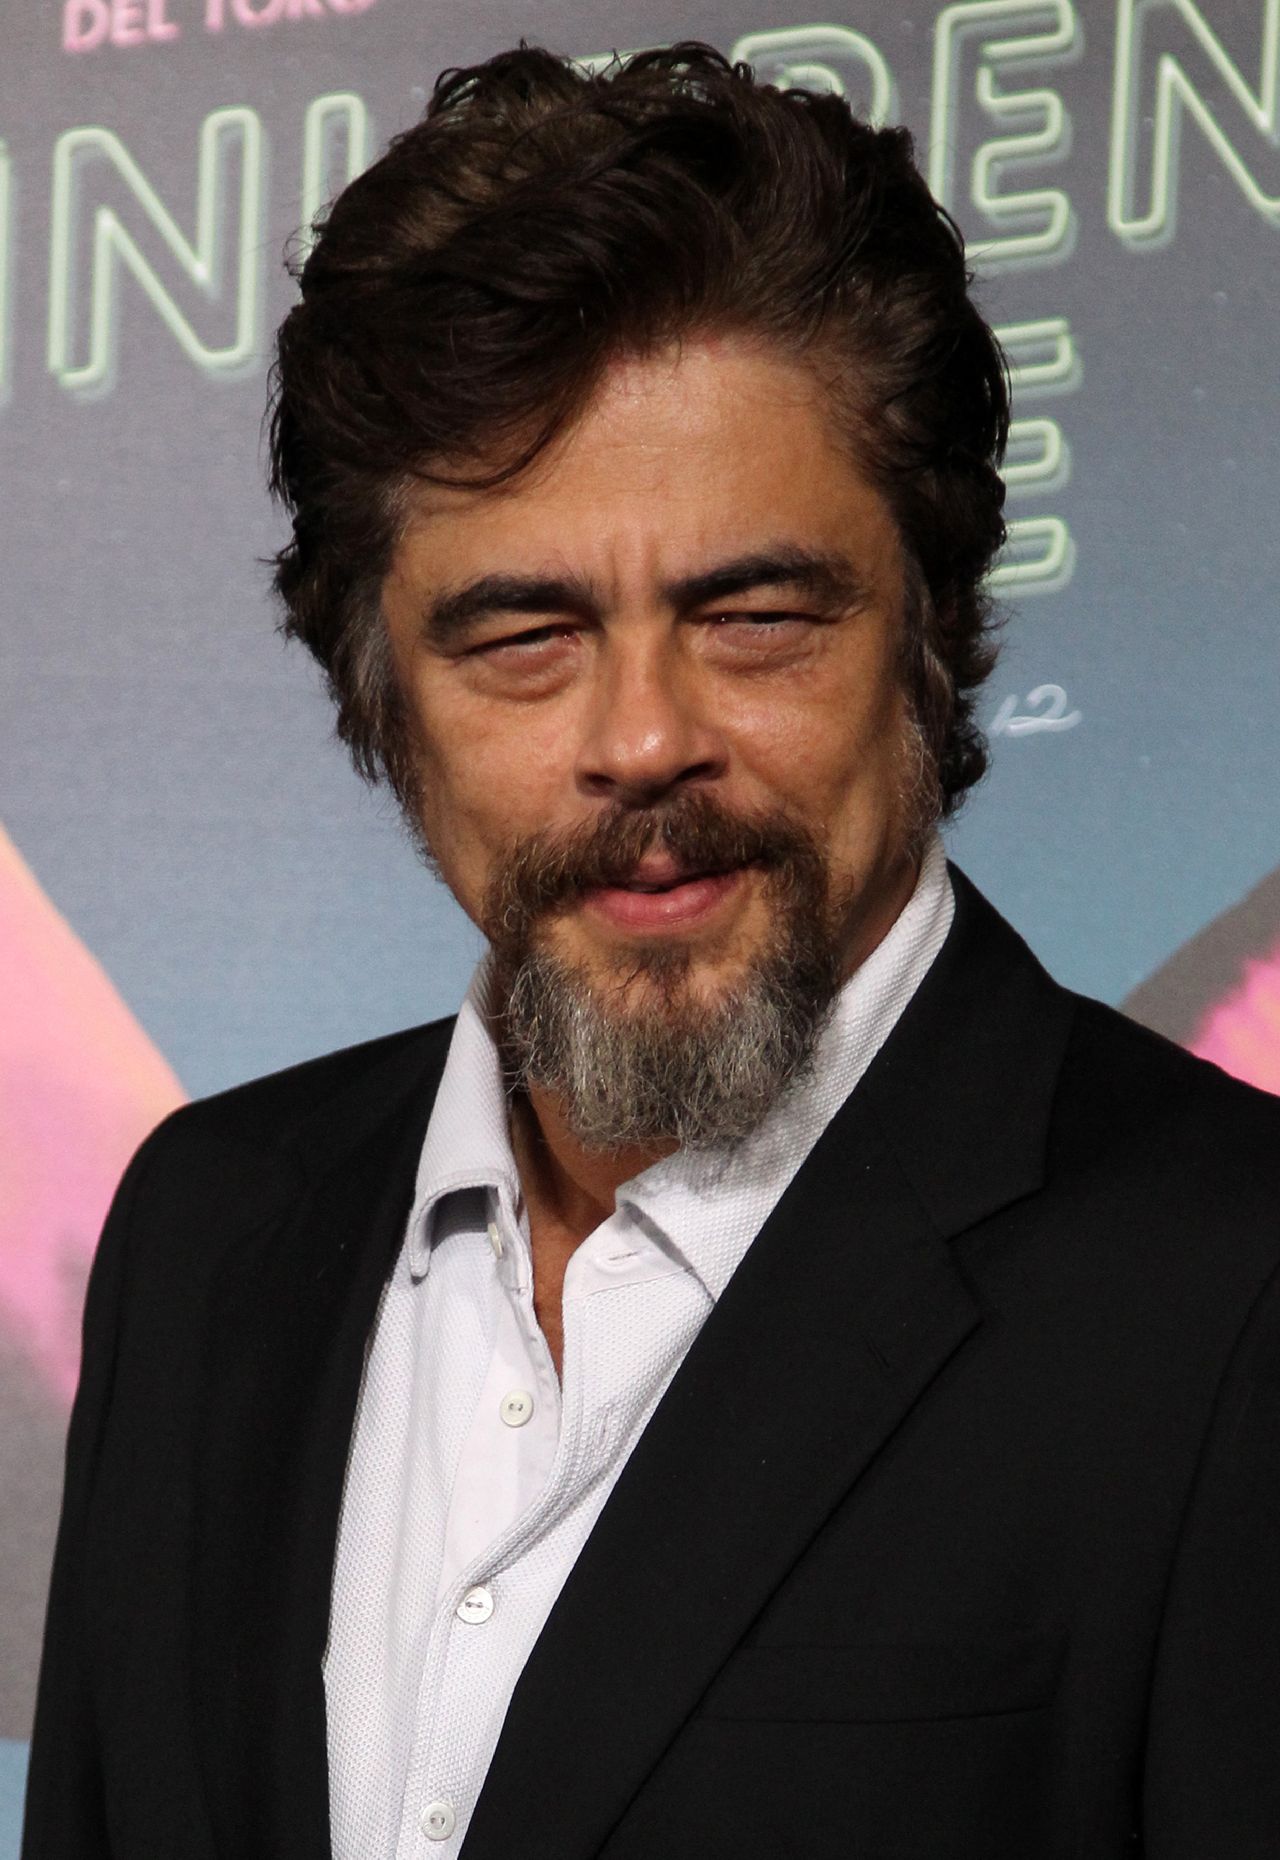 Benicio del Toro (48) - February 19, 1967